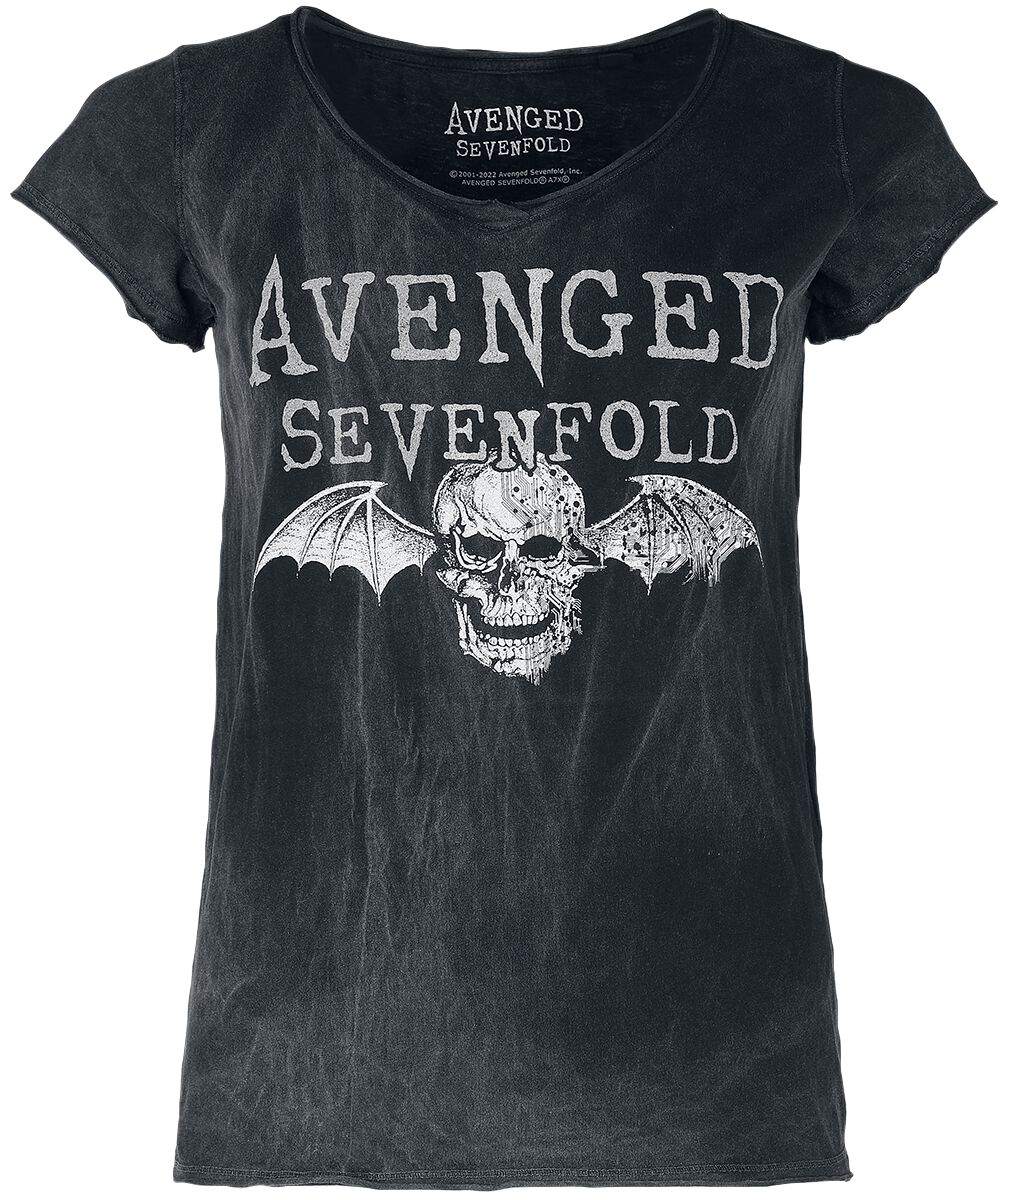 T-Shirt Manches courtes de Avenged Sevenfold - Deathbat - S à L - pour Femme - noir